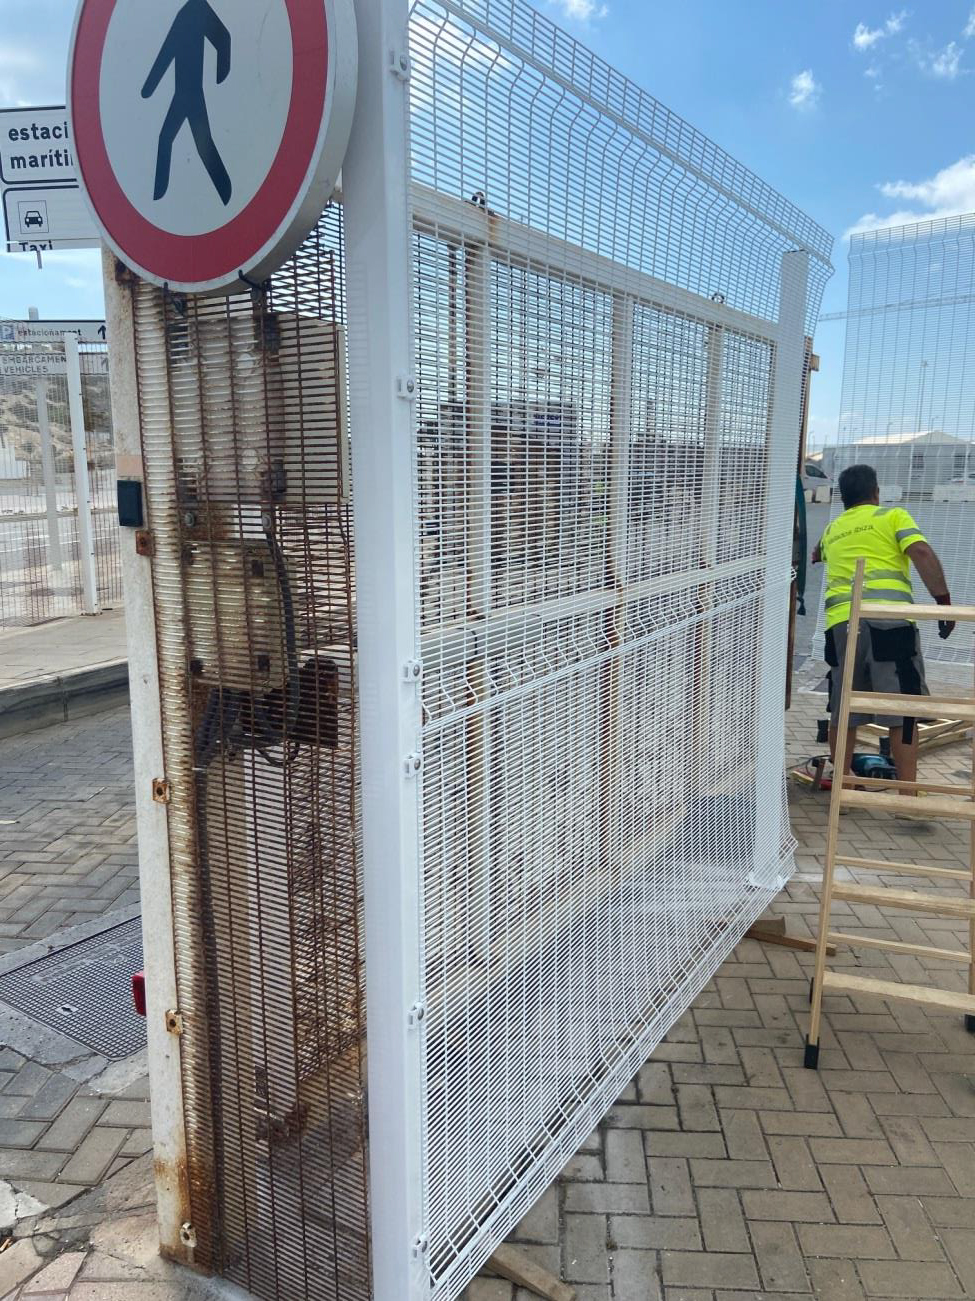 La APB refuerza la seguridad del recinto controlado del puerto de Eivissa con nuevos cerramientos y puertas de acceso